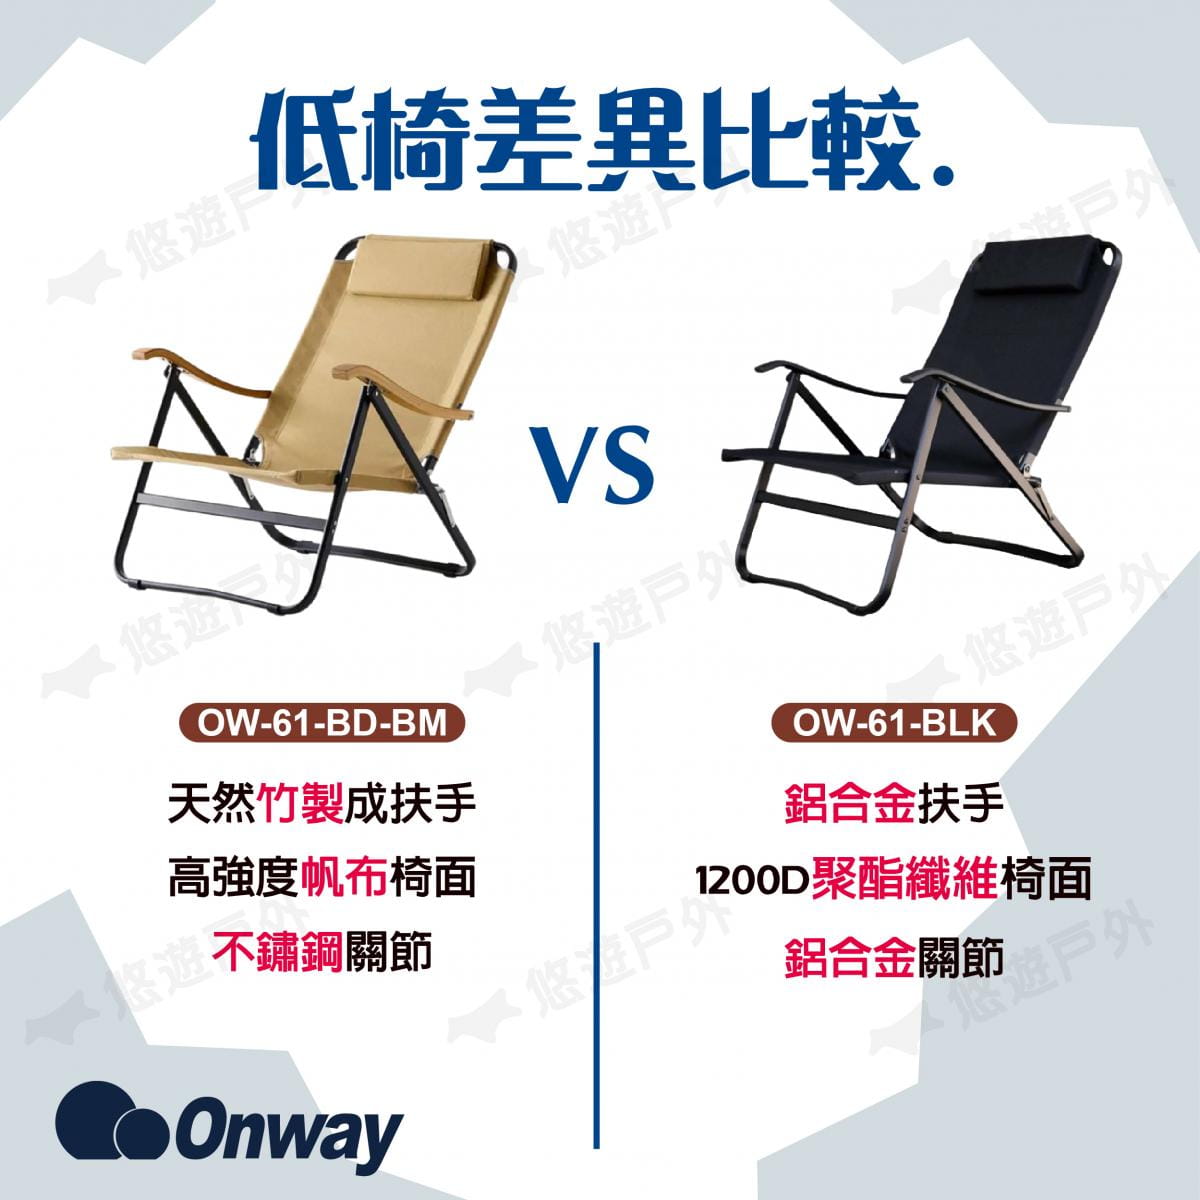 【ONWAY】迷地舒適低黑椅 OW-61-BLK (悠遊戶外) 6